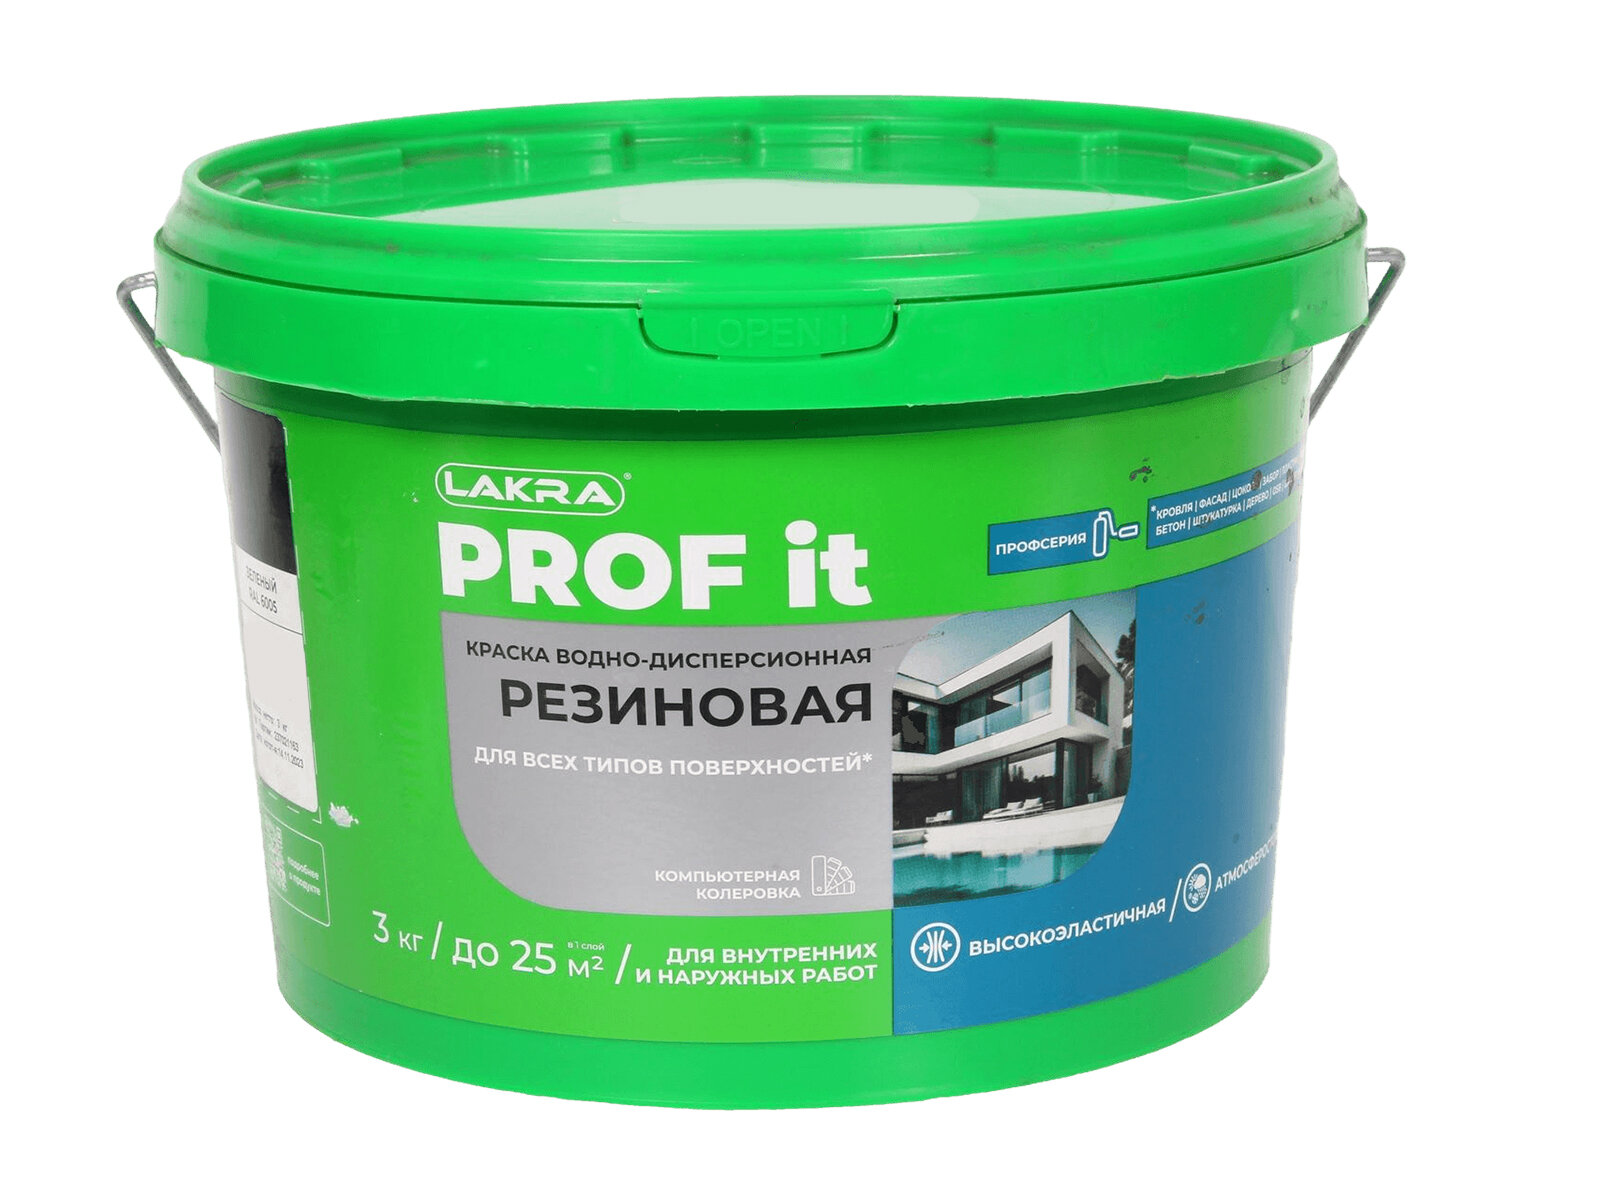 Краска лакра PROF IT резиновая зеленый RAL 6005 3 кг